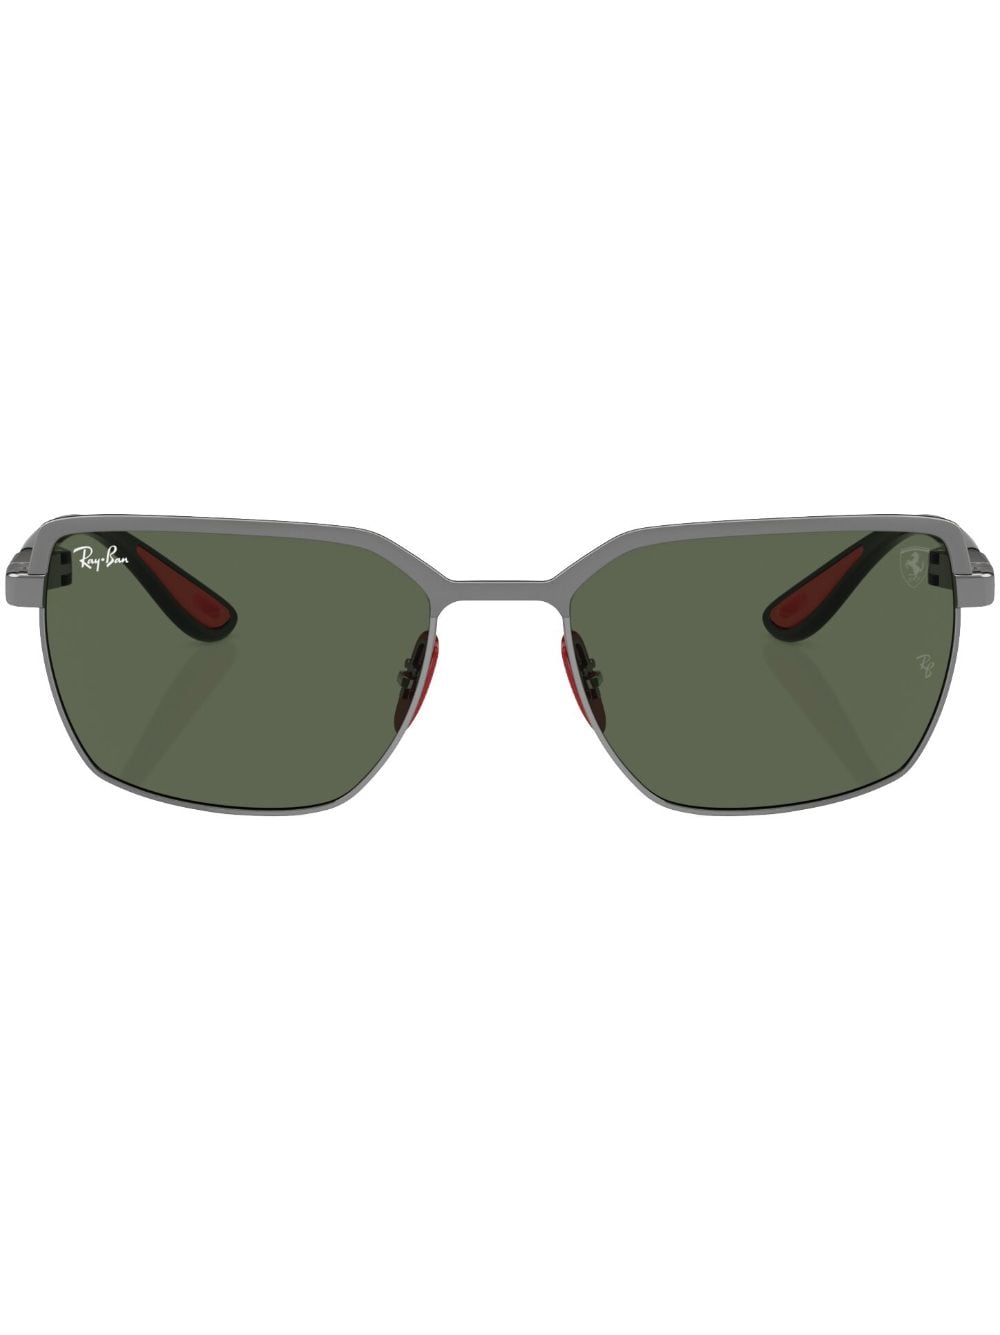 Ray-Ban x Scuderia Ferrari square-frame sunglasses - Grey von Ray-Ban